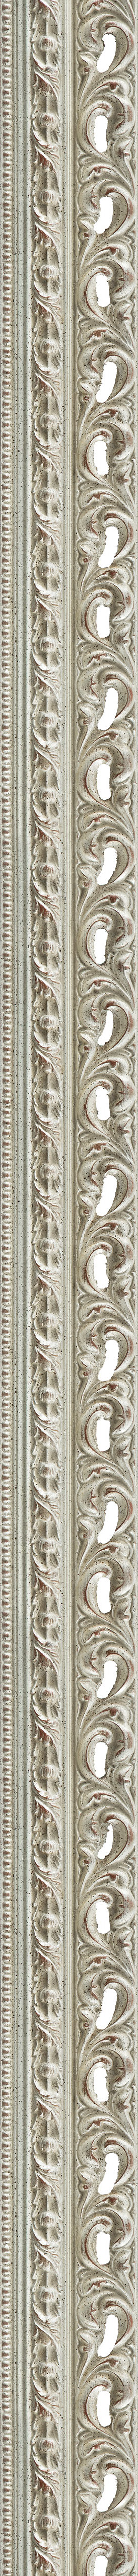 Wide antique silver leaf frame frame